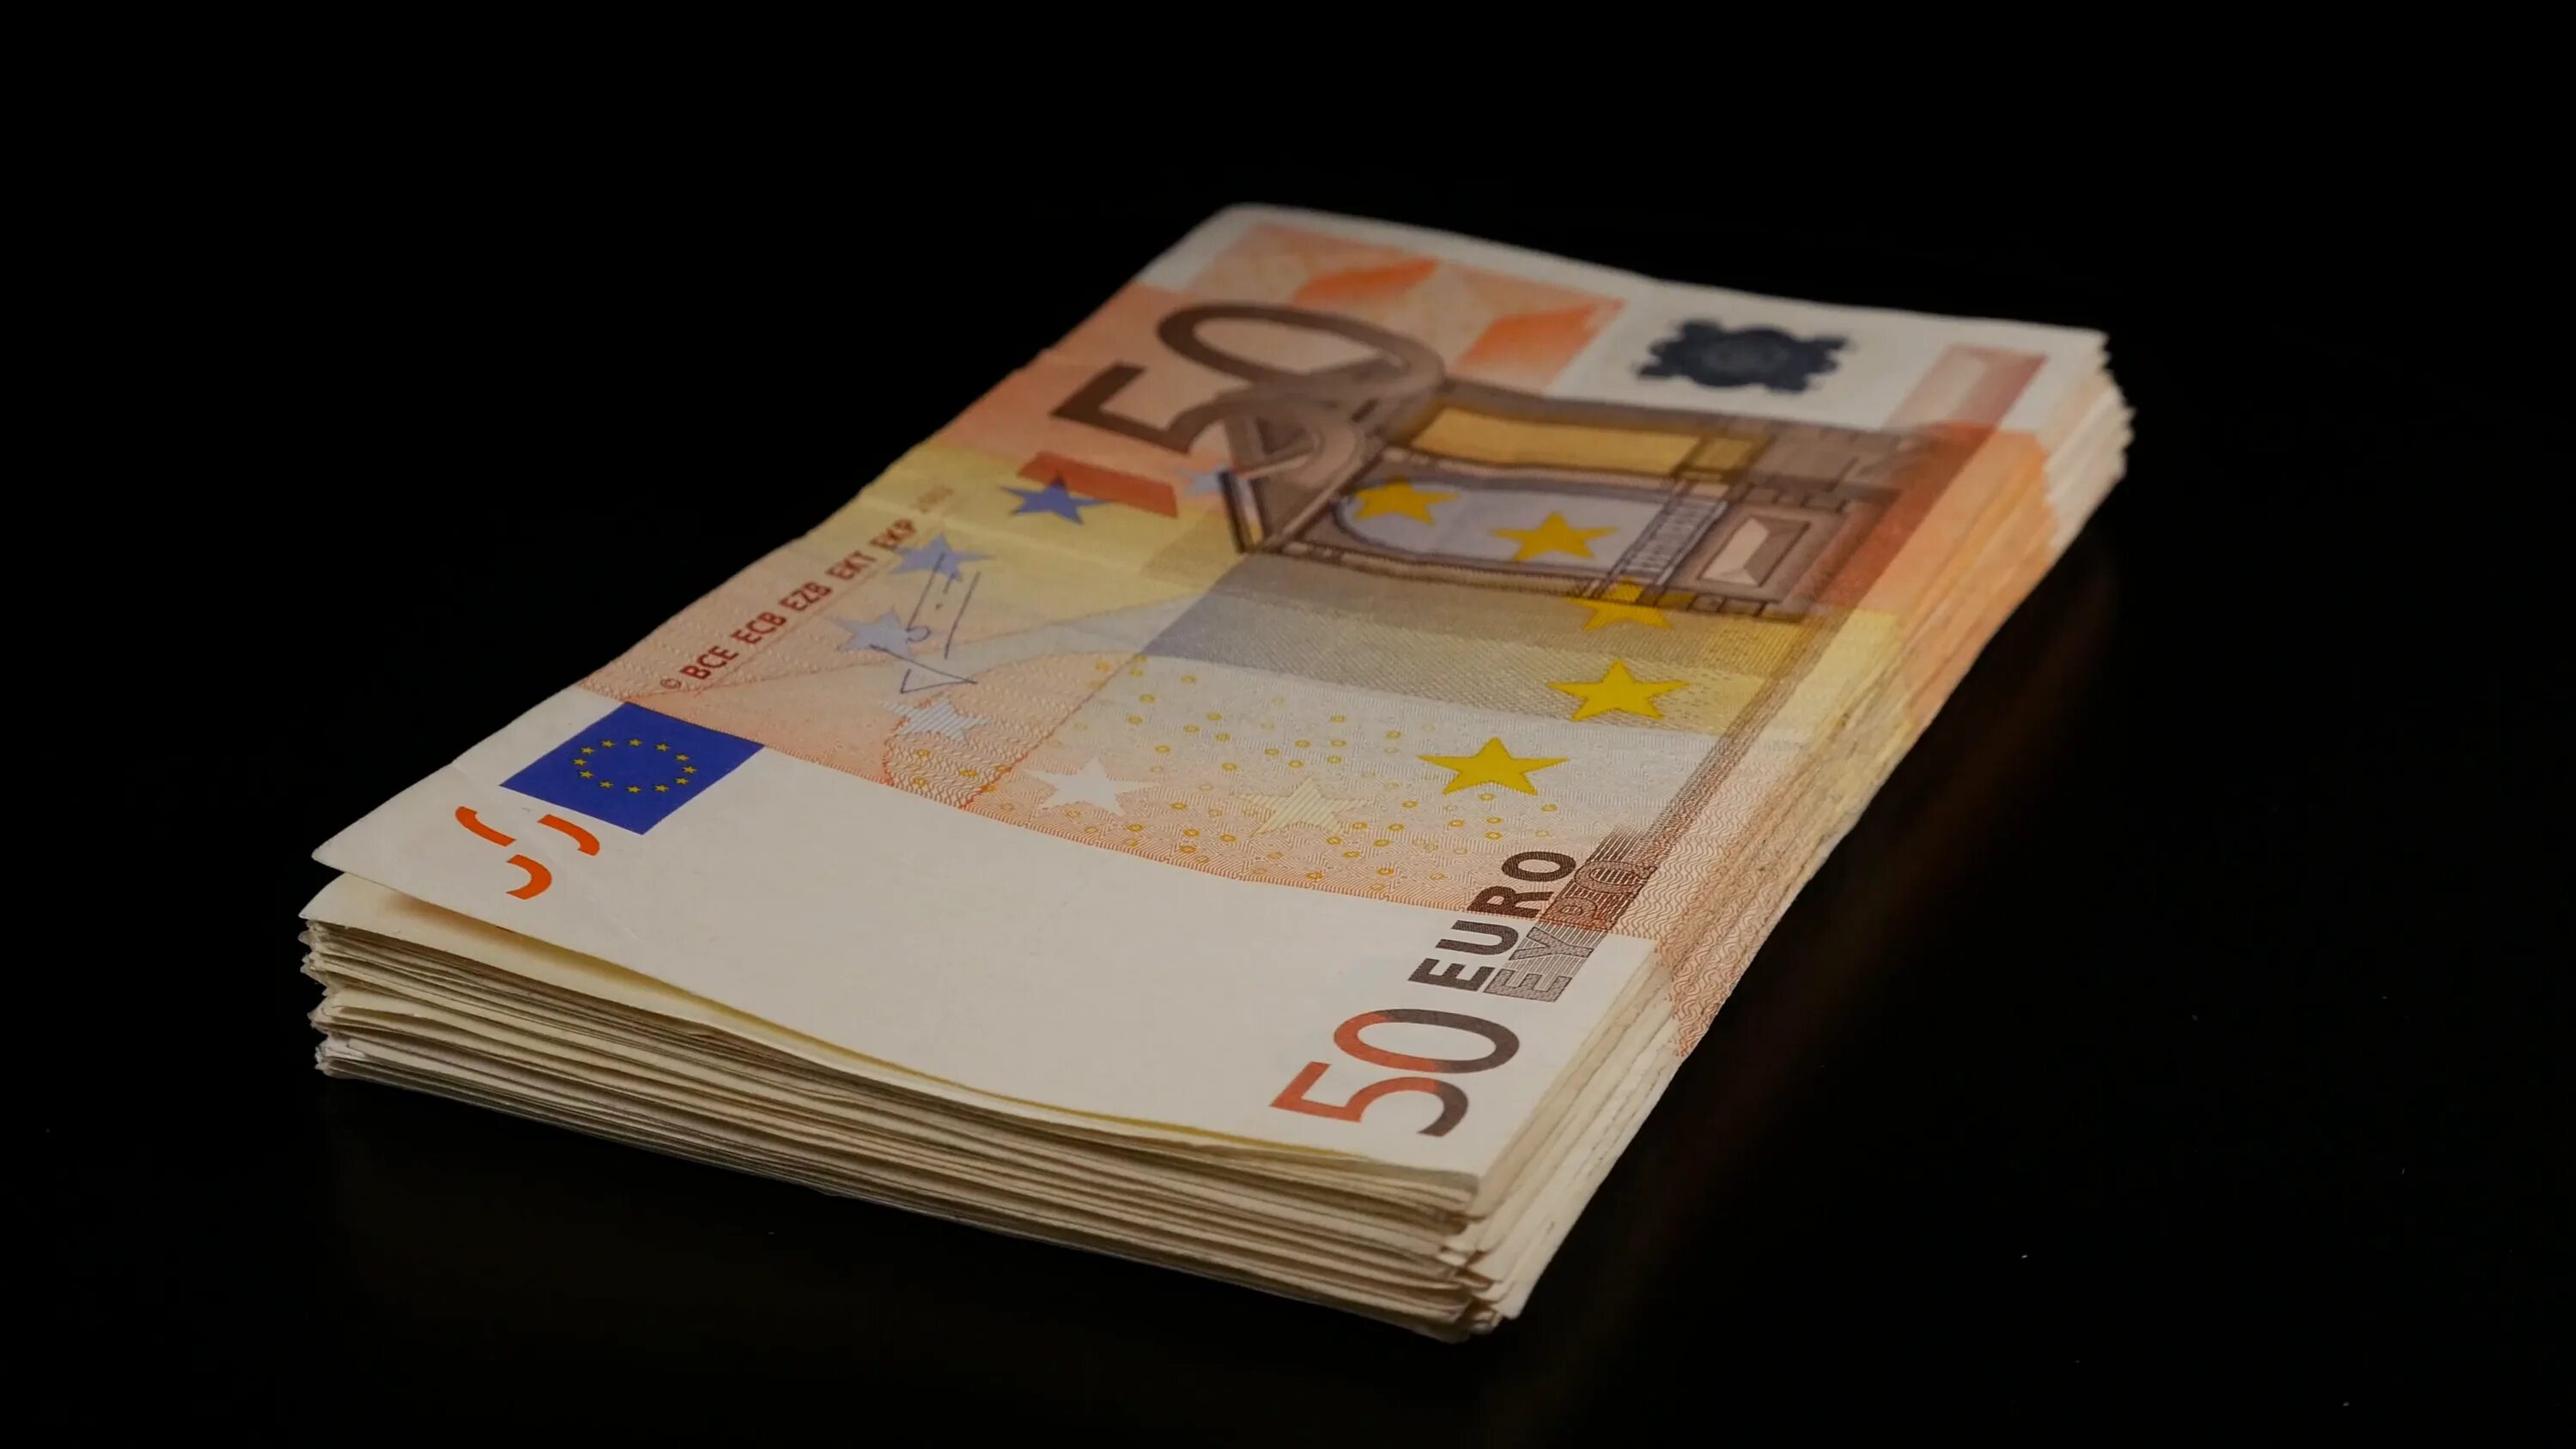 T me euro bill